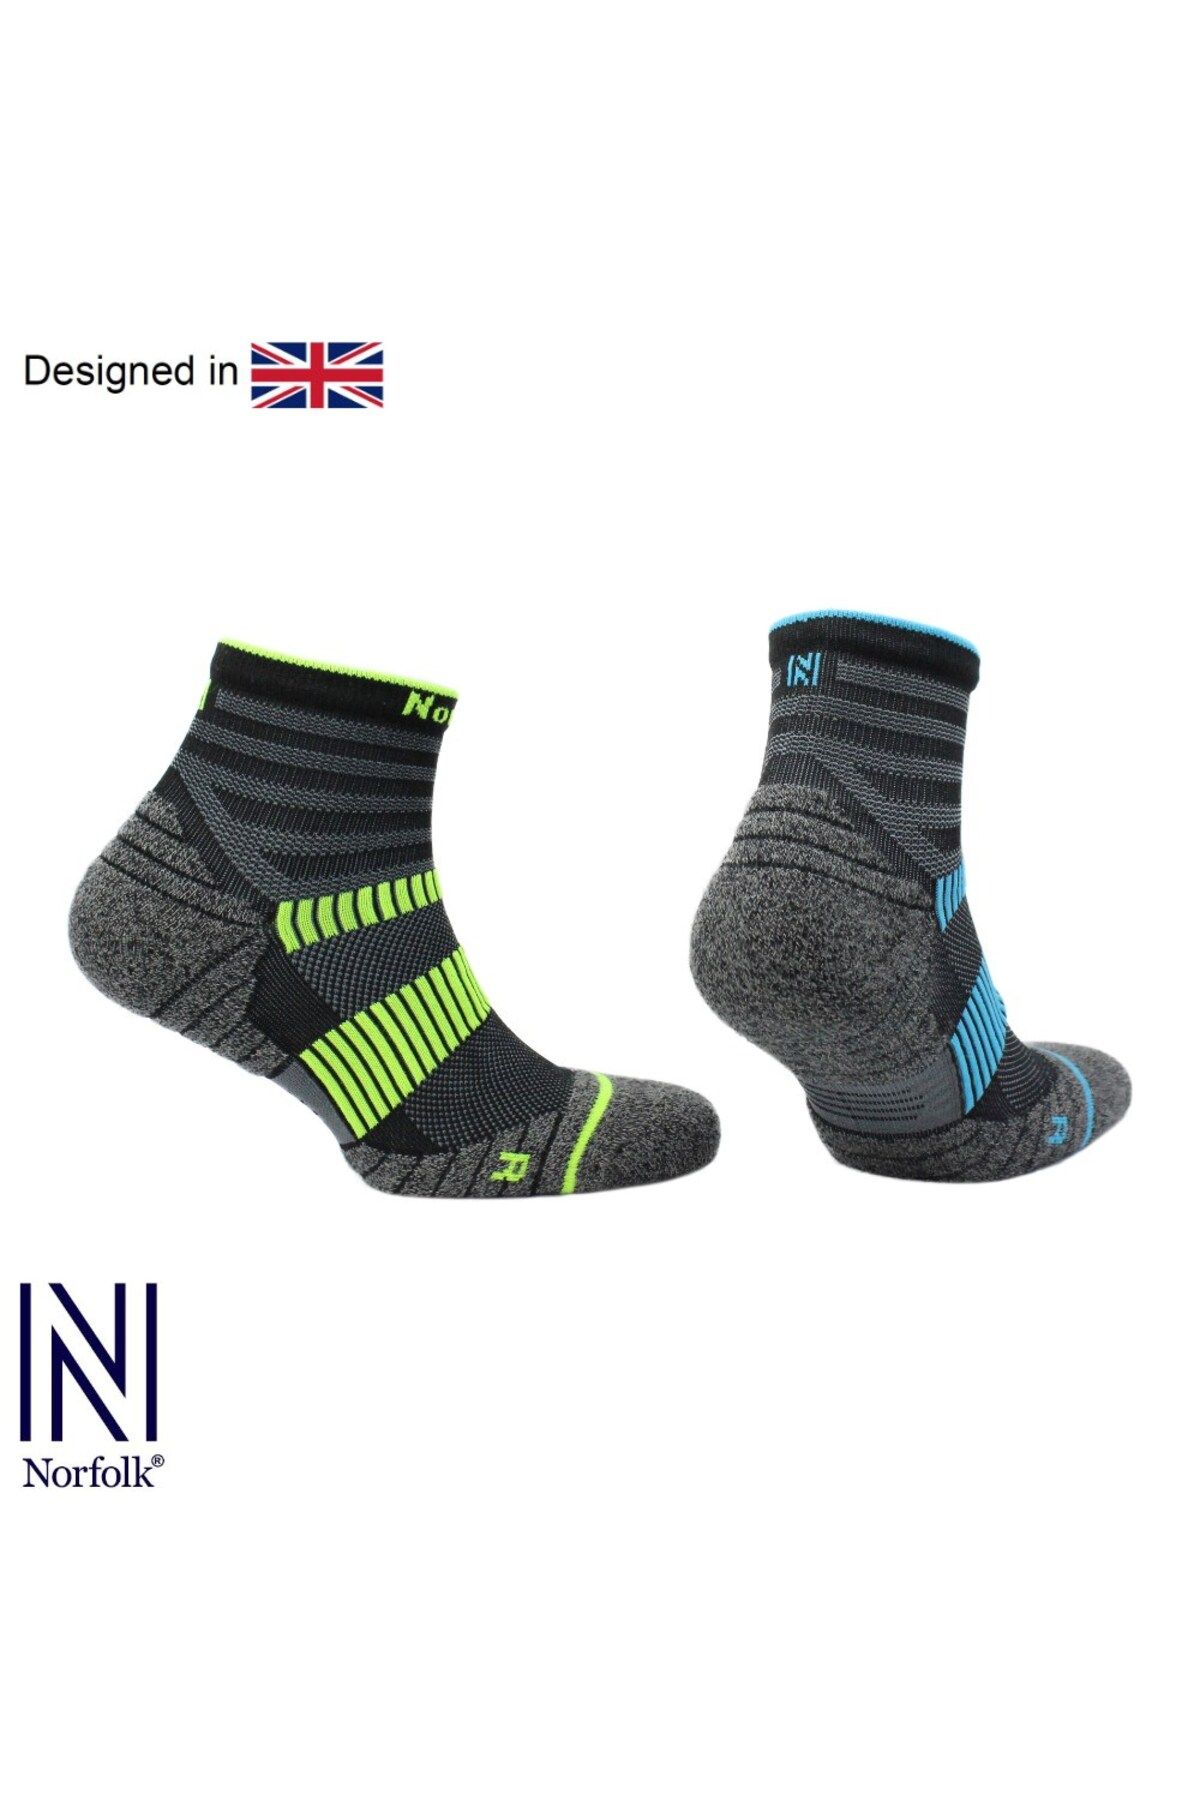 Norfolk COUGAR Prolen® Dry Touch Taban Ve Bilek Destekli Koşu Çorabı 2'li Paket